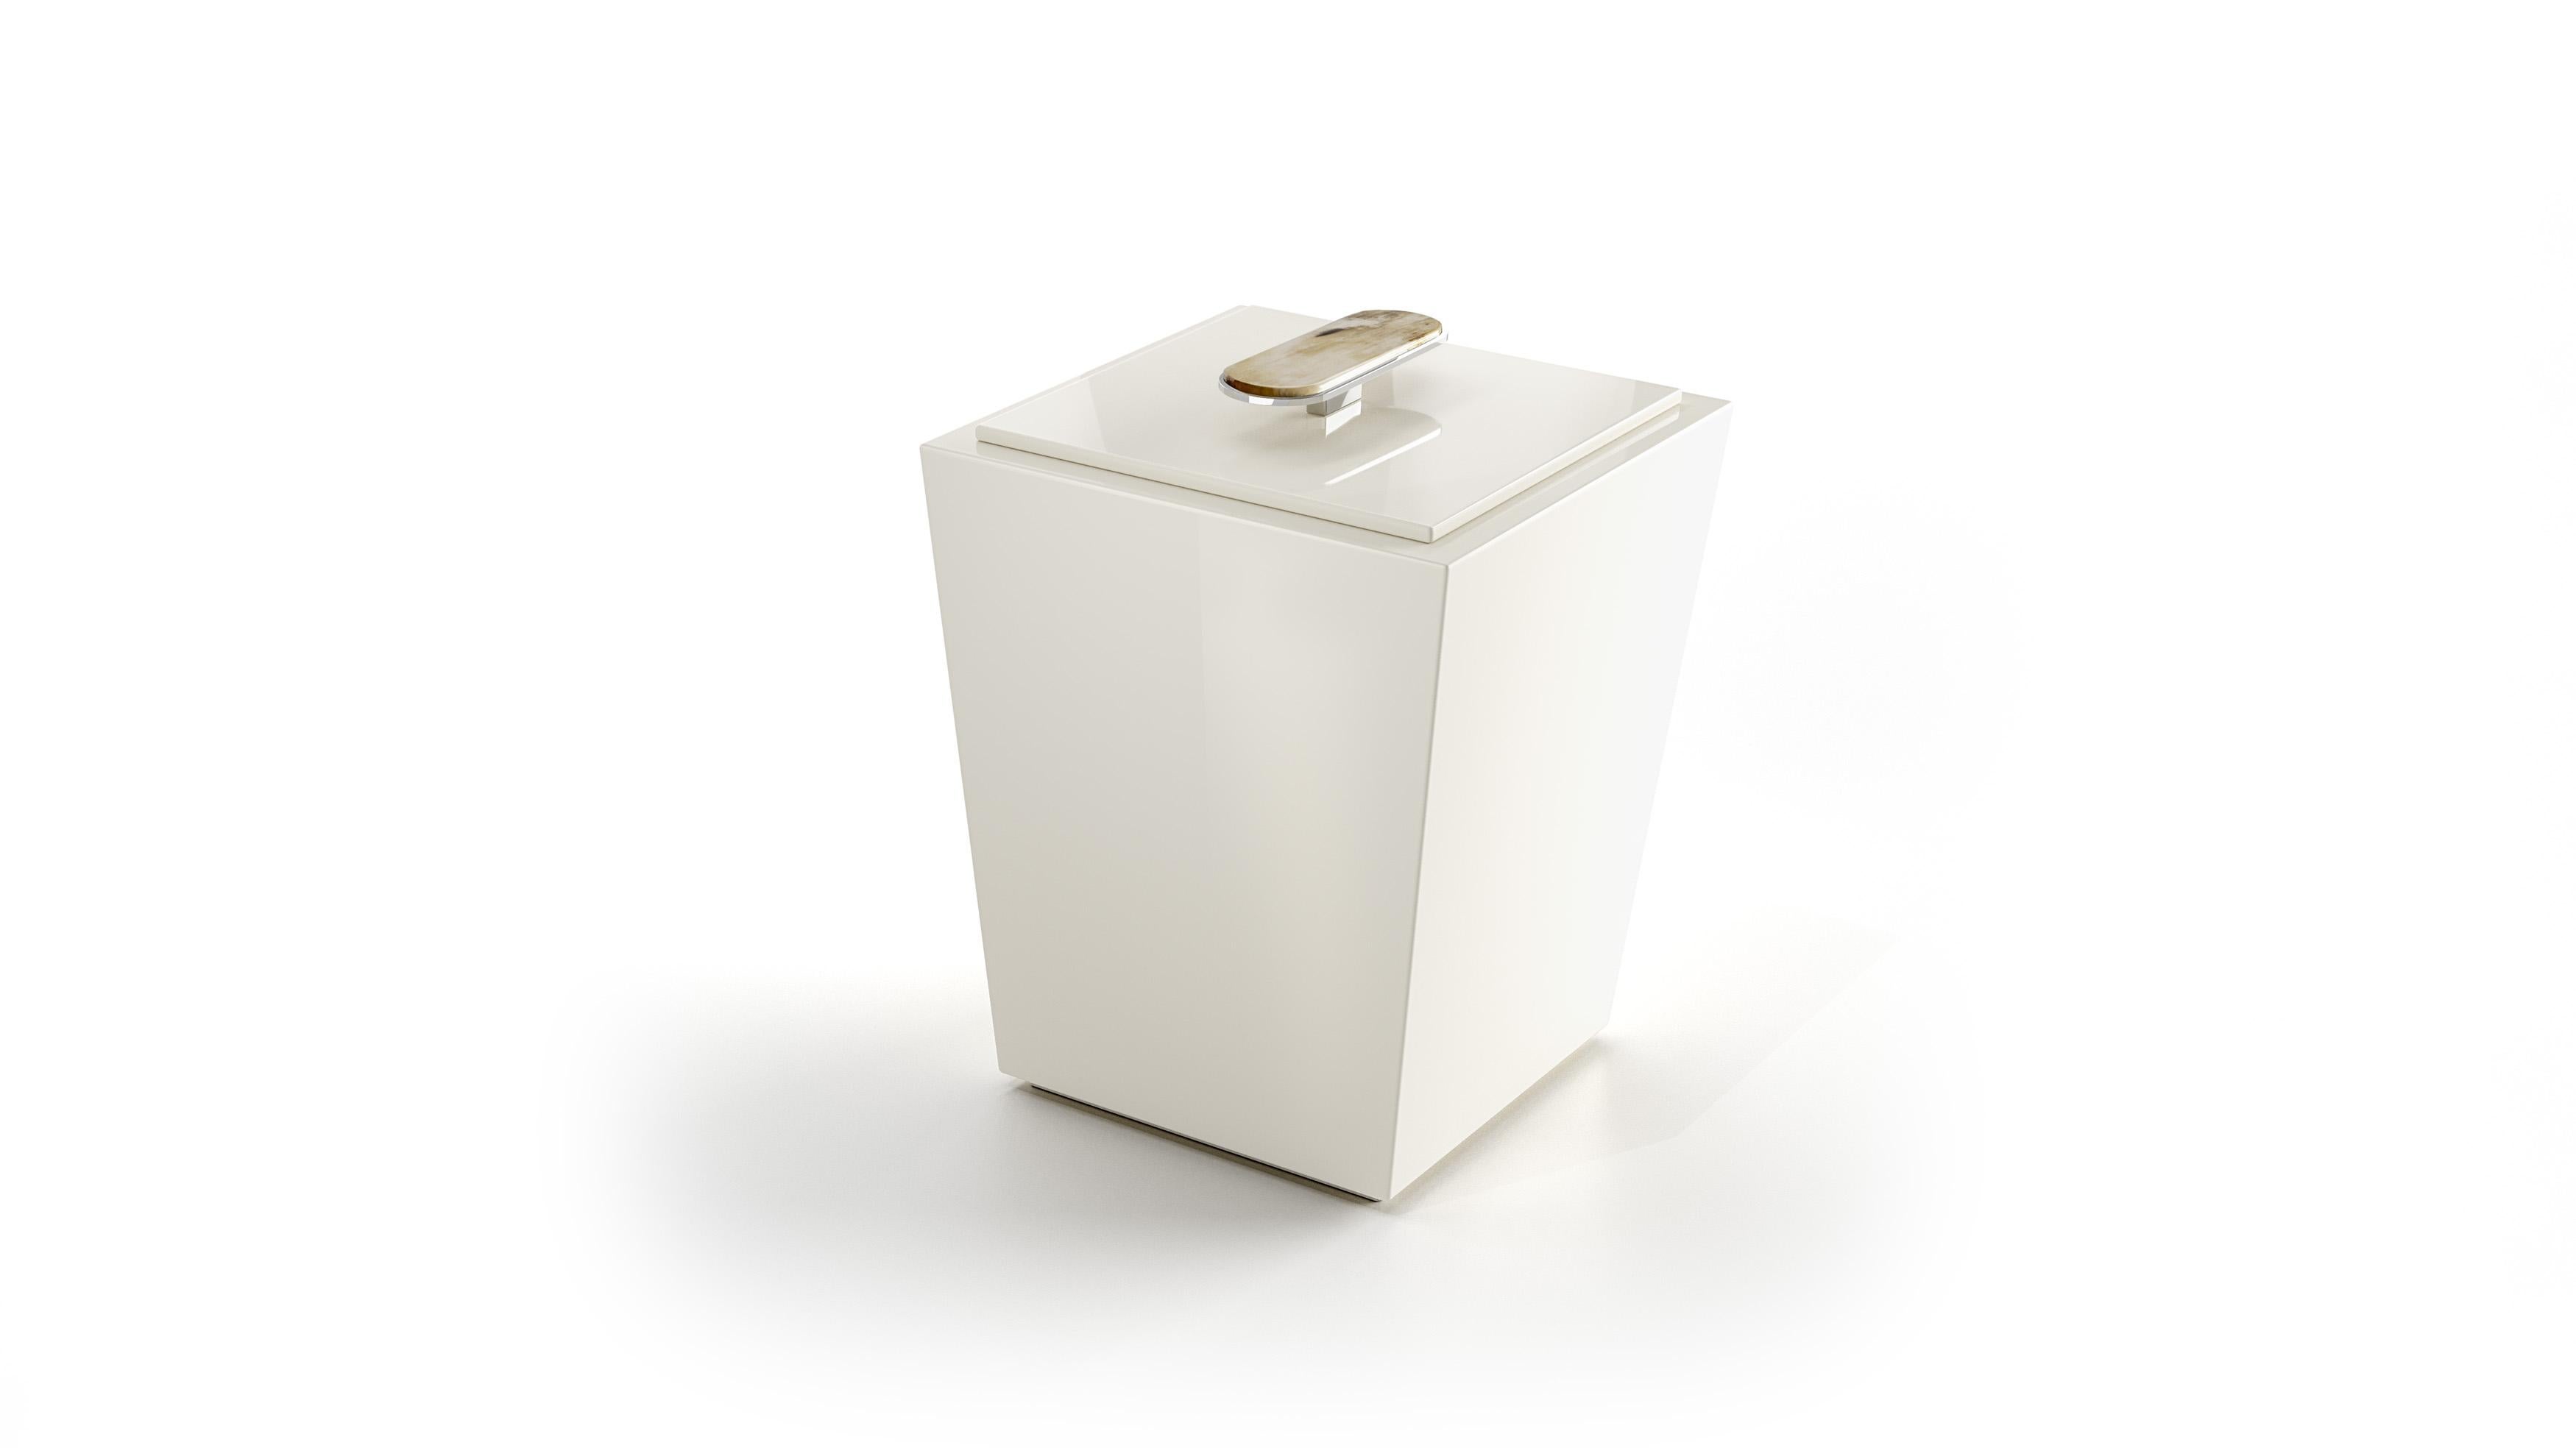 Der Papierkorb Bicco ist ein vielseitiges und elegantes Dekorationselement, das sowohl im Badezimmer als auch im Büro eingesetzt werden kann. Dieser Behälter aus glänzend elfenbeinfarben lackiertem Holz verfügt über einen praktischen Deckel mit